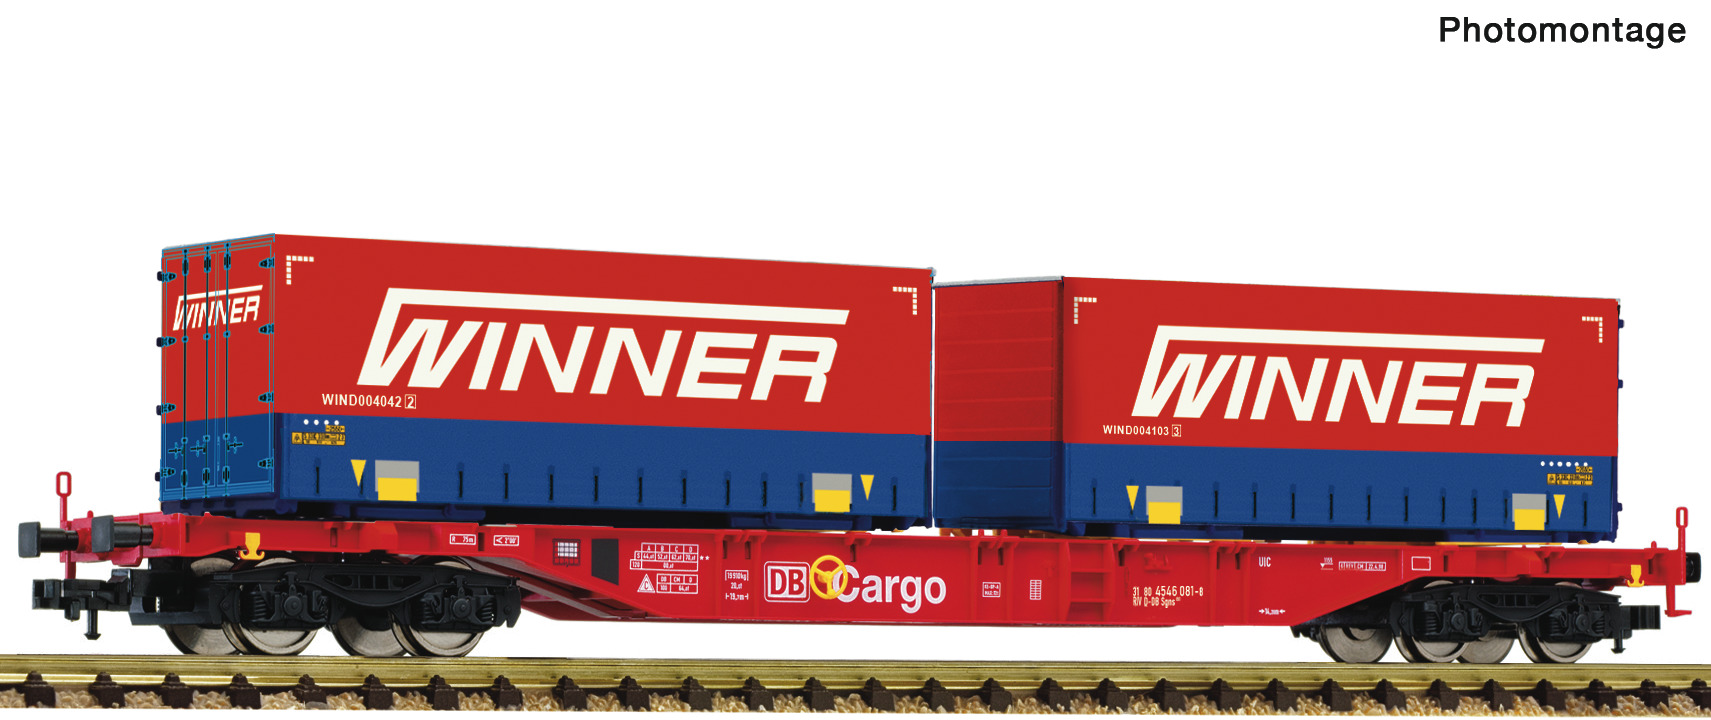 Fleischmann 825037 Containertragwagen + Winner Display 825030 #7 